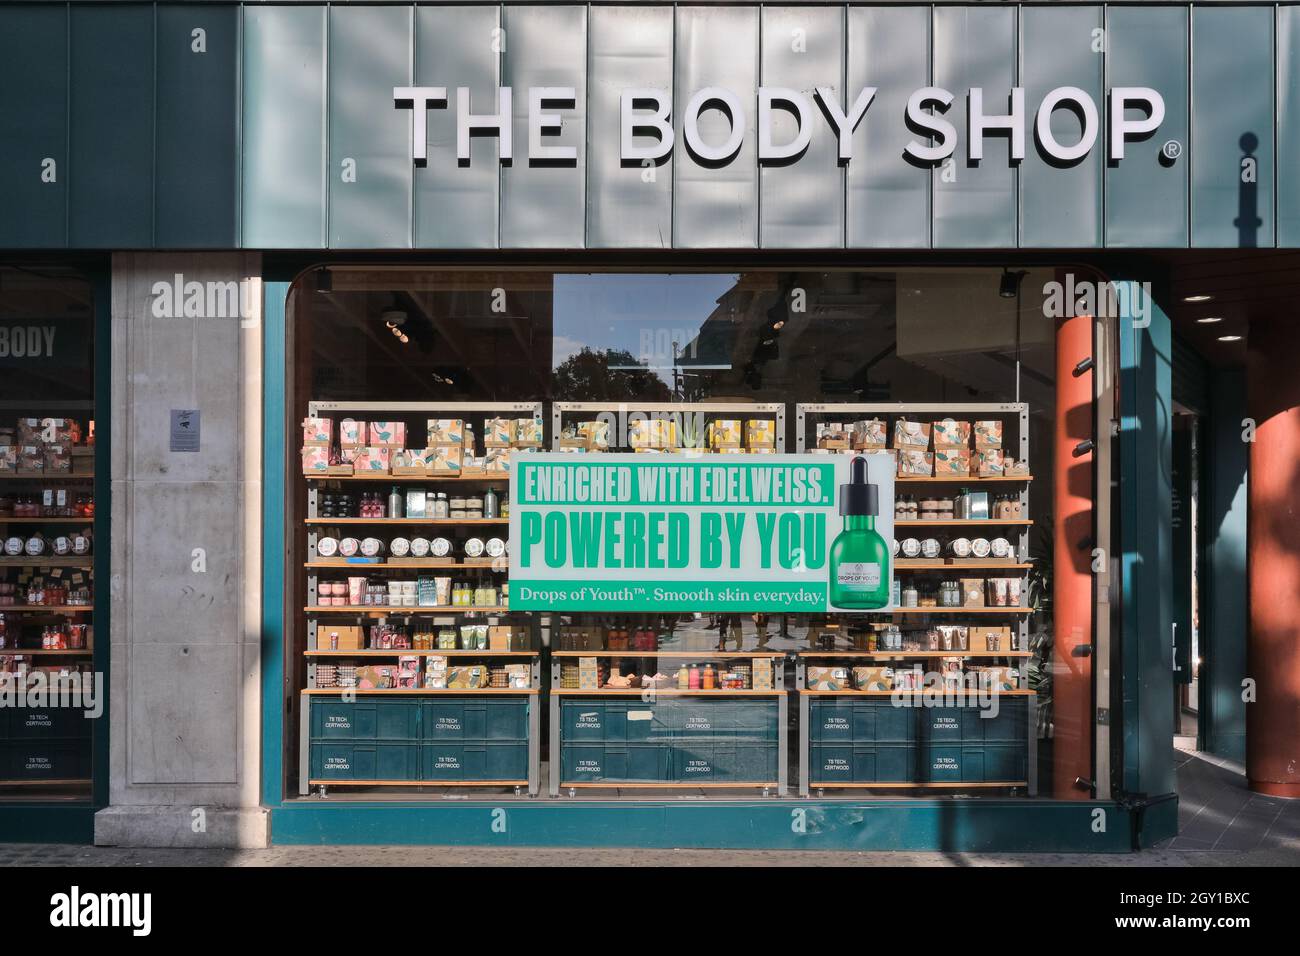 The Body Shop, britischer Kosmetik- und Badeartikel-Einzelhandel,  Außenansicht, Oxford Street, London, England Stockfotografie - Alamy